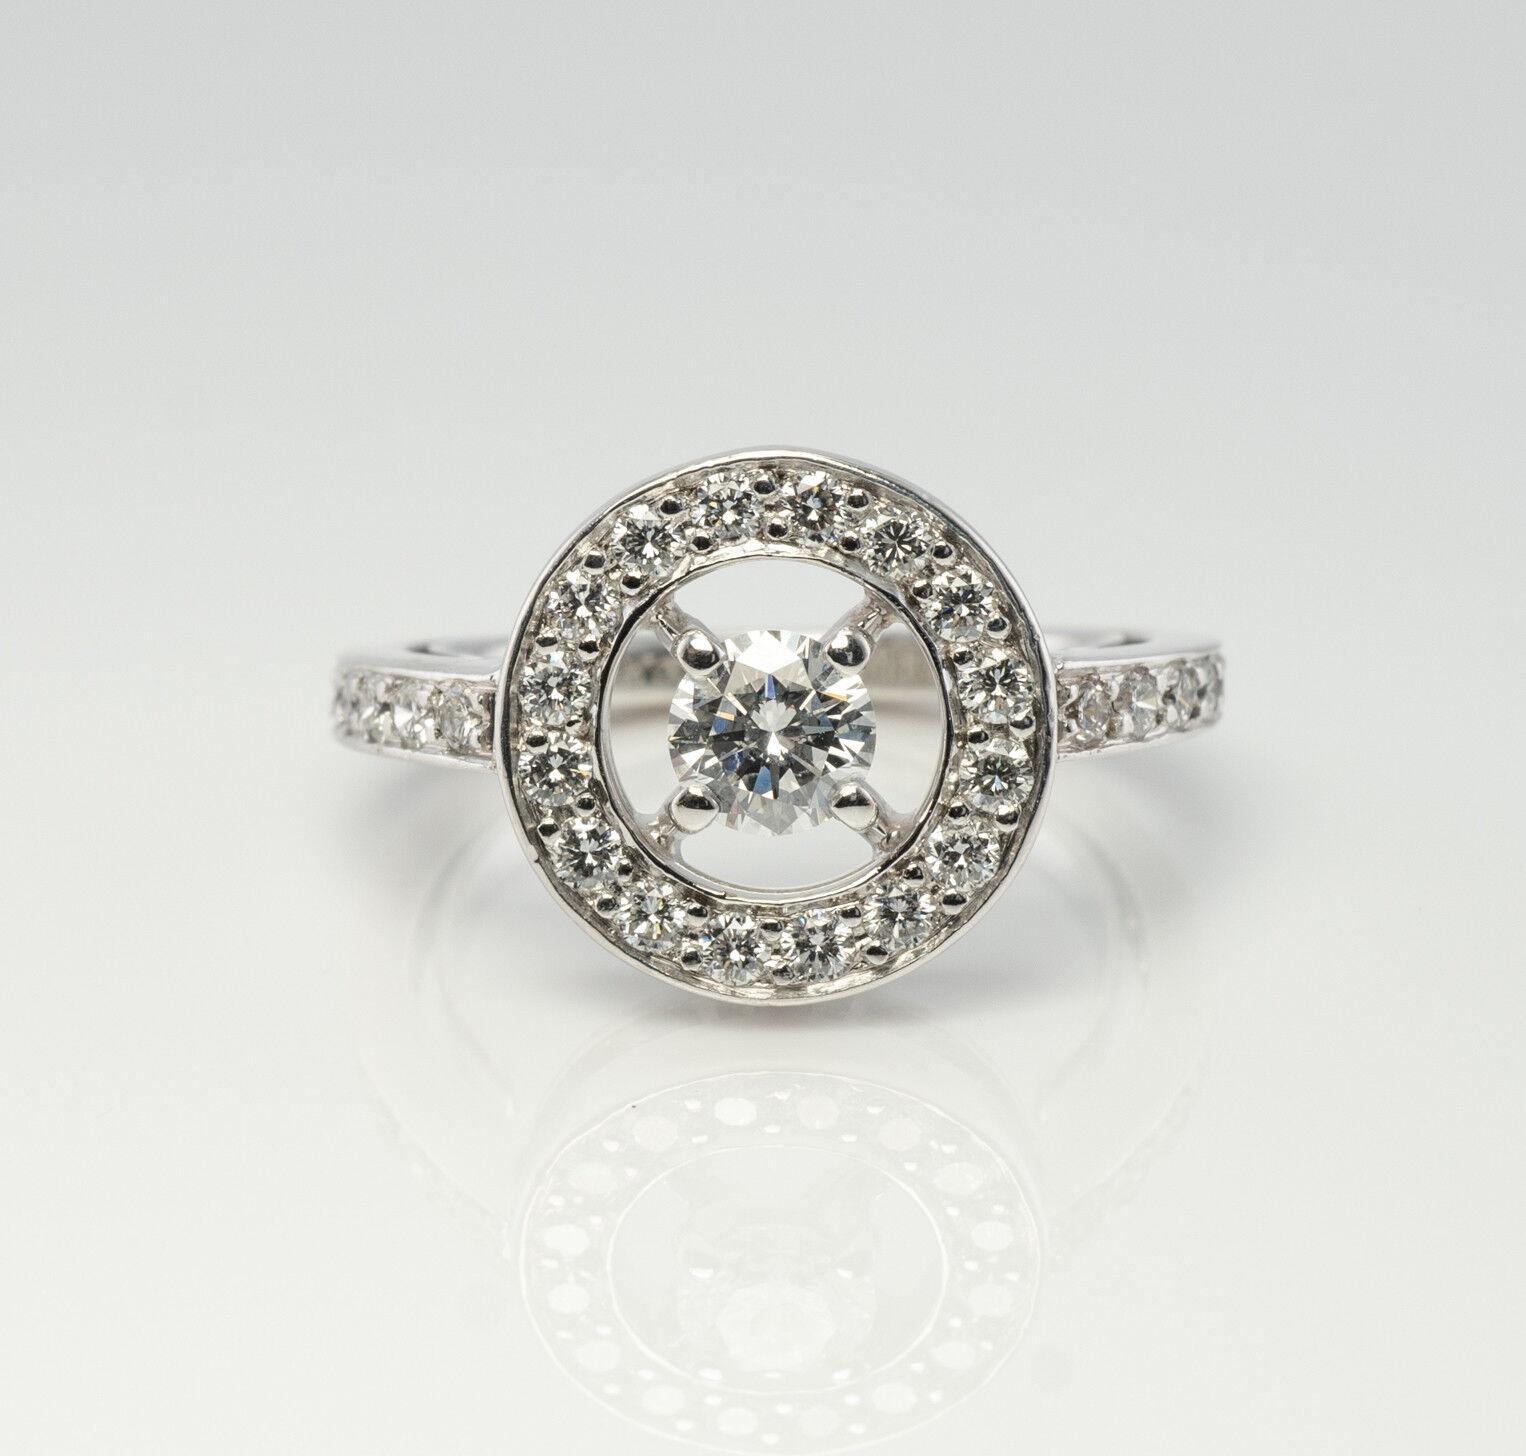 Authentische Boucheron Ring, Diamant-Ring, massiv 18K Weißgold Ring, Kreis Ring. Die Seriennummer lautet PRG29652, Größe 50, 15,92 mm. Der runde Diamant im Brillantschliff hat ein Gewicht von 0,25 Karat, und vierunddreißig kleinere Diamanten tragen